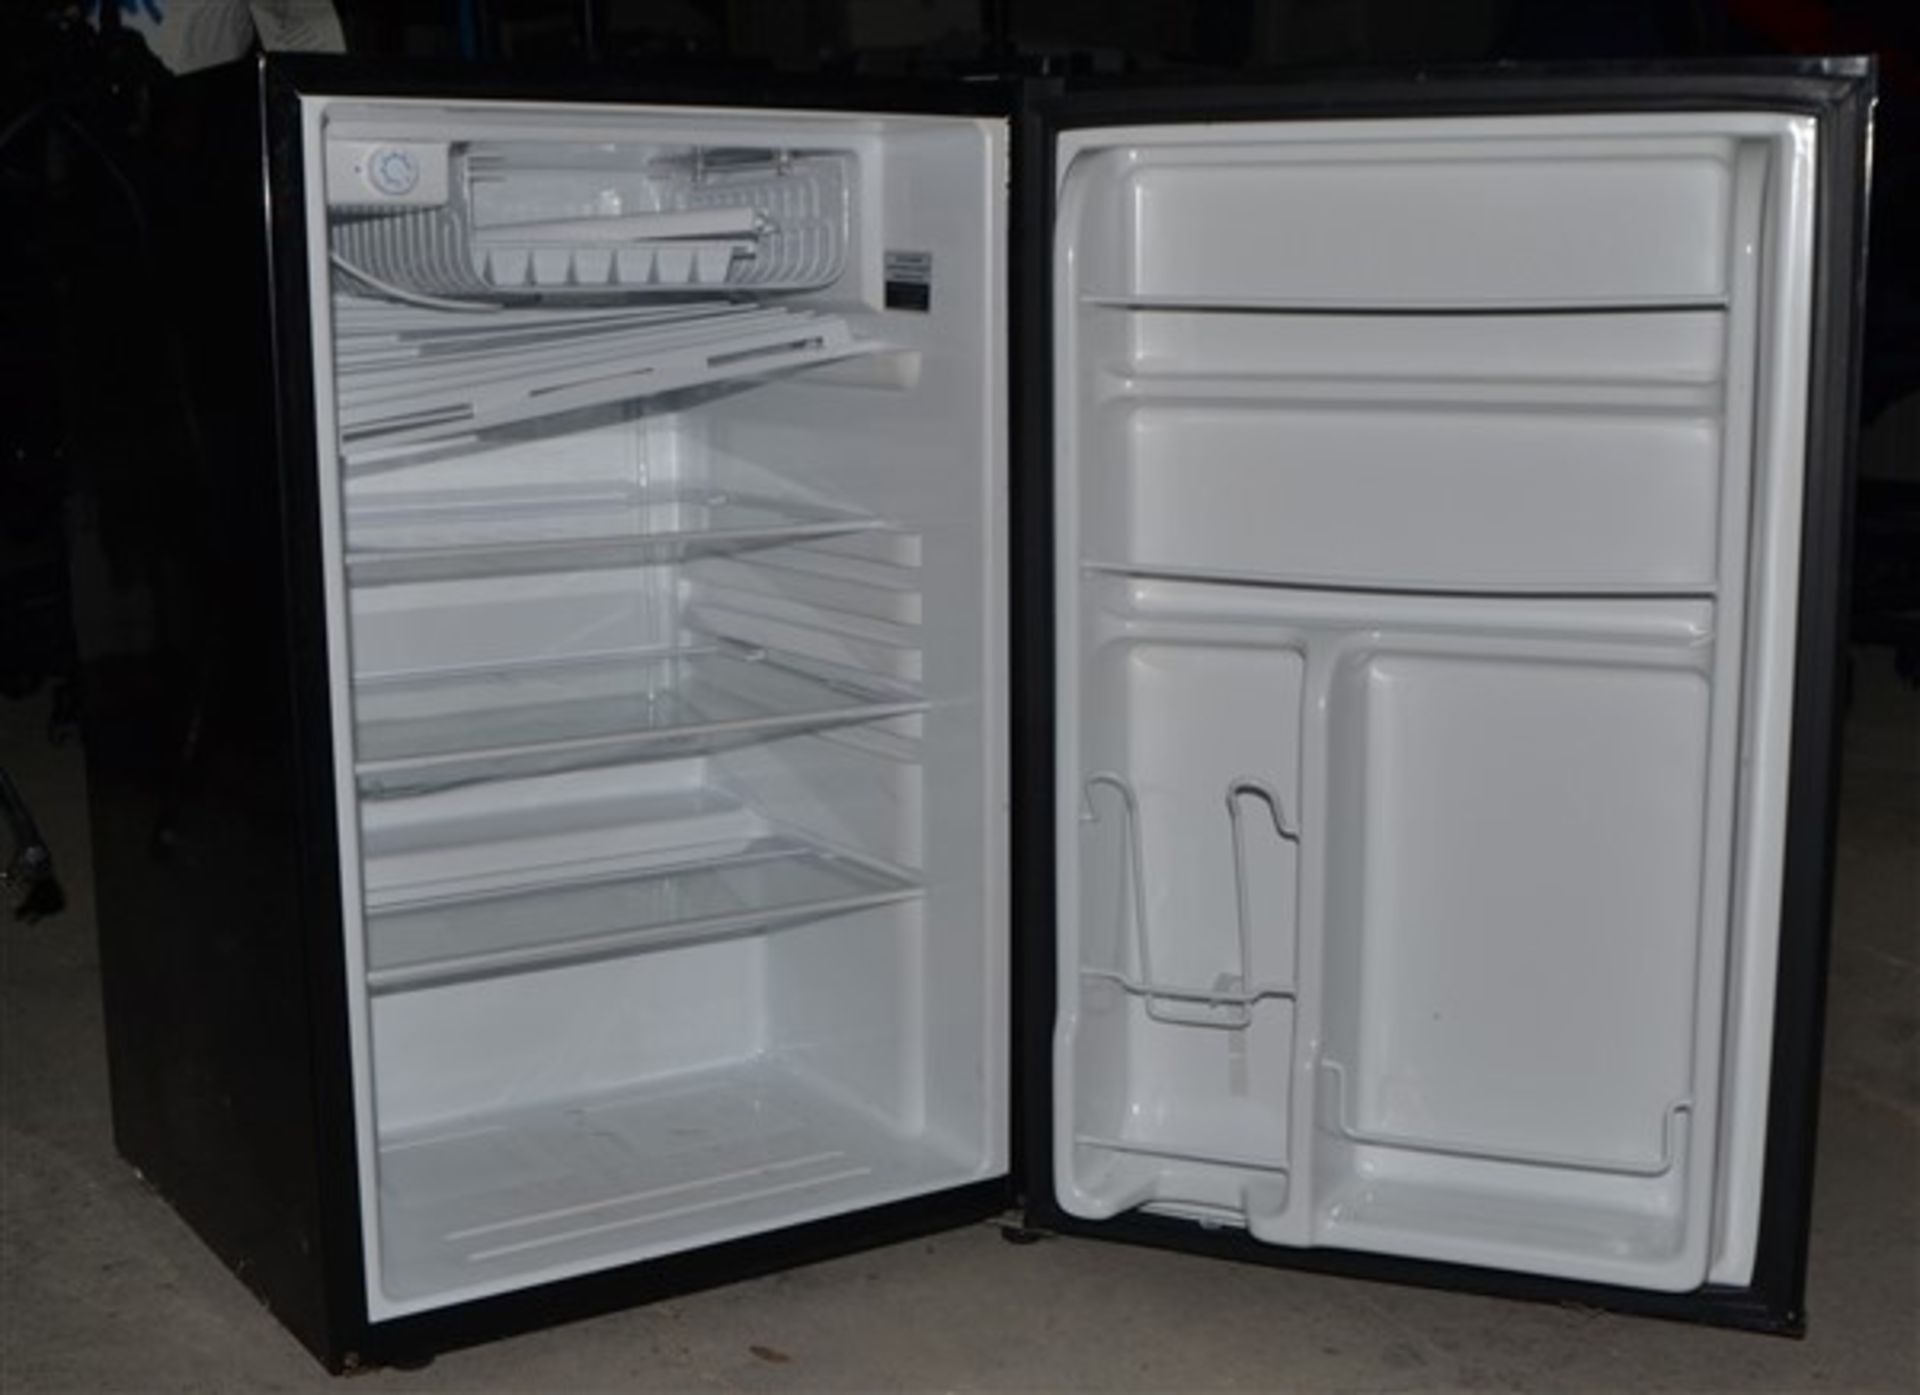 G.E. mini refrigerator